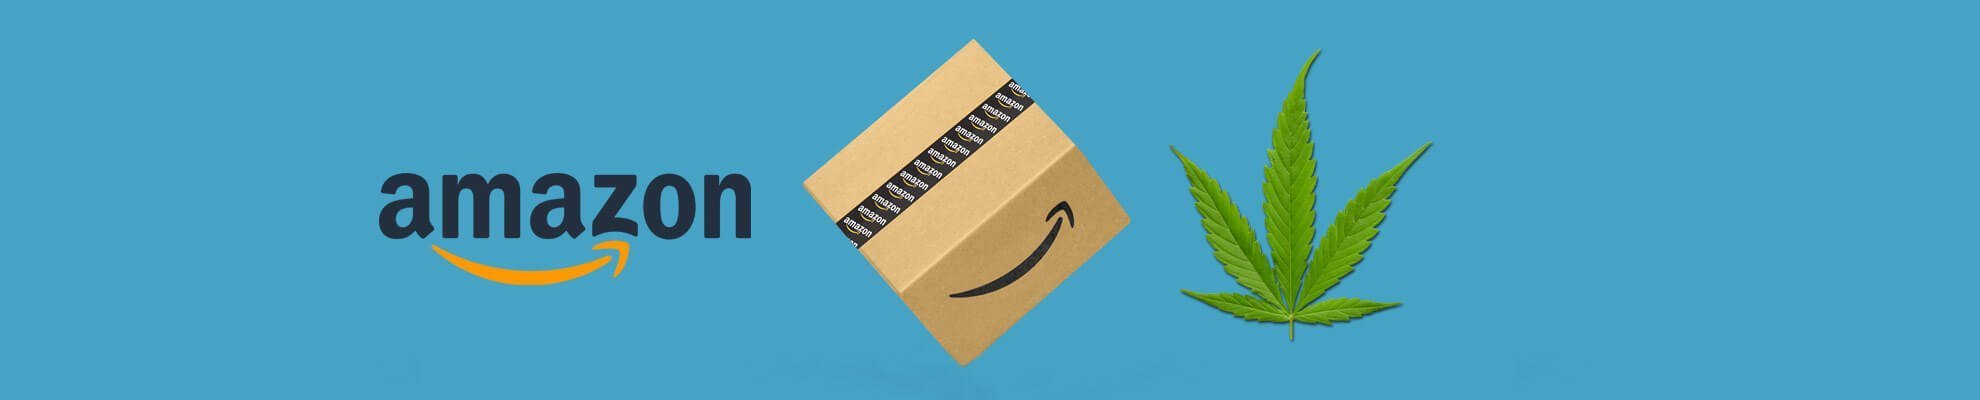 Slika prikazuje logotip podjetja Amazon, škatlo ter konopljin list.